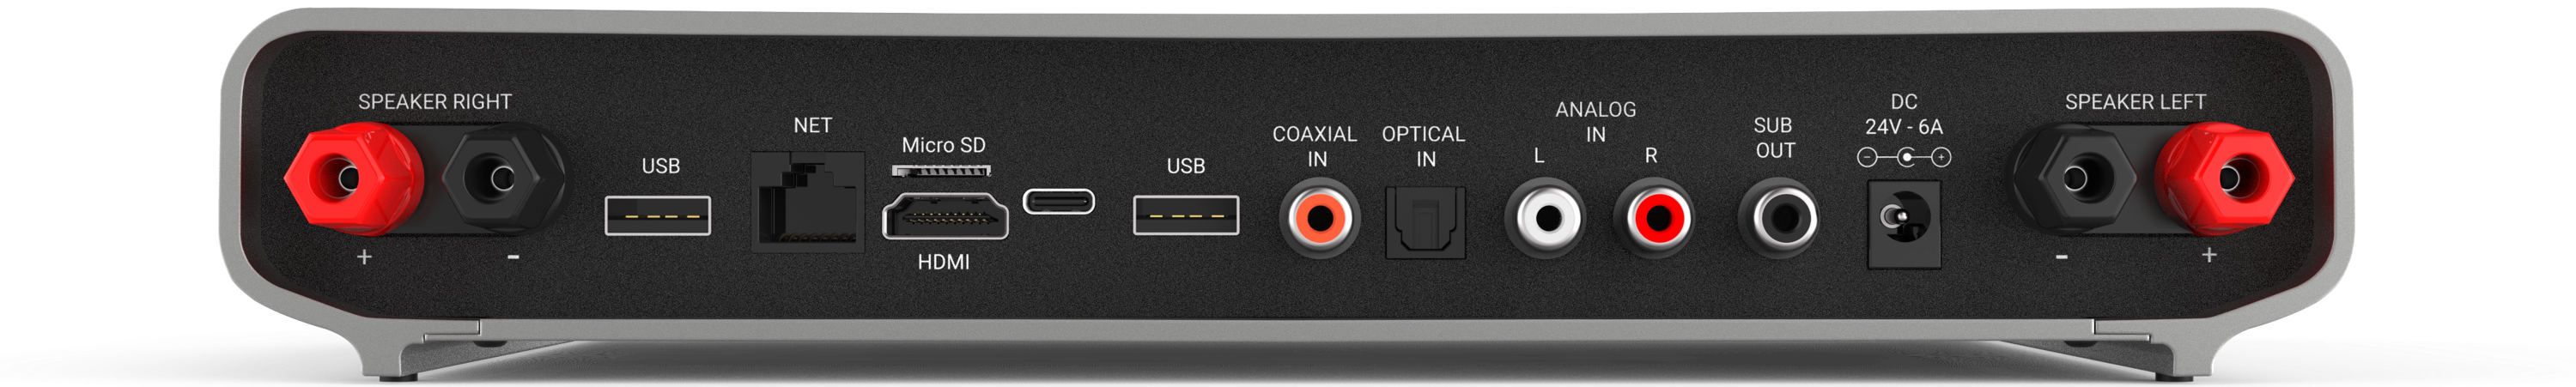 L'Integro dispone di un ingresso analogico single-ended (RCA) e due digitali SPDIF sia ottici che coassiali. Per quanto riguarda le uscite, è presente un'uscita subwoofer e l'uscita HDMI può essere utilizzata per sfruttare il menu OSD di Volumio.